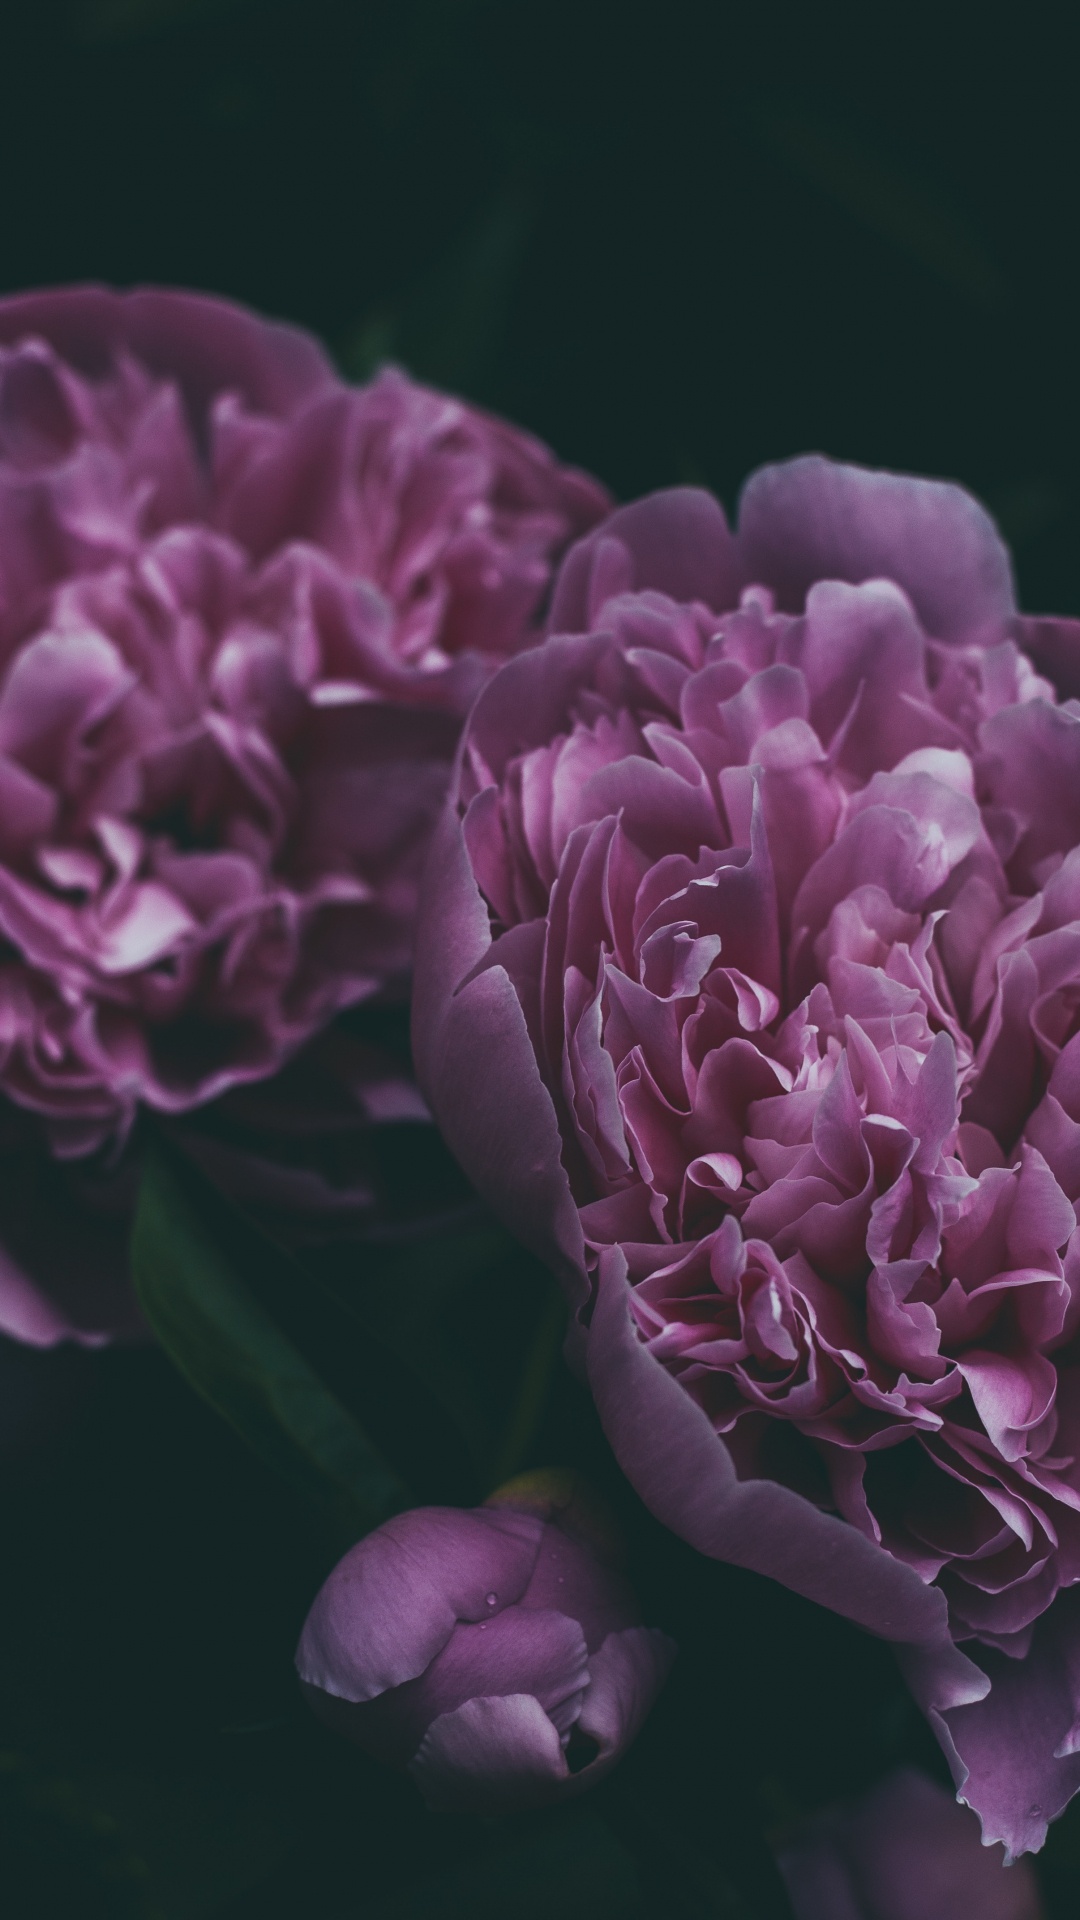 牡丹, 显花植物, 紫罗兰色, 紫色的, 粉红色 壁纸 1080x1920 允许